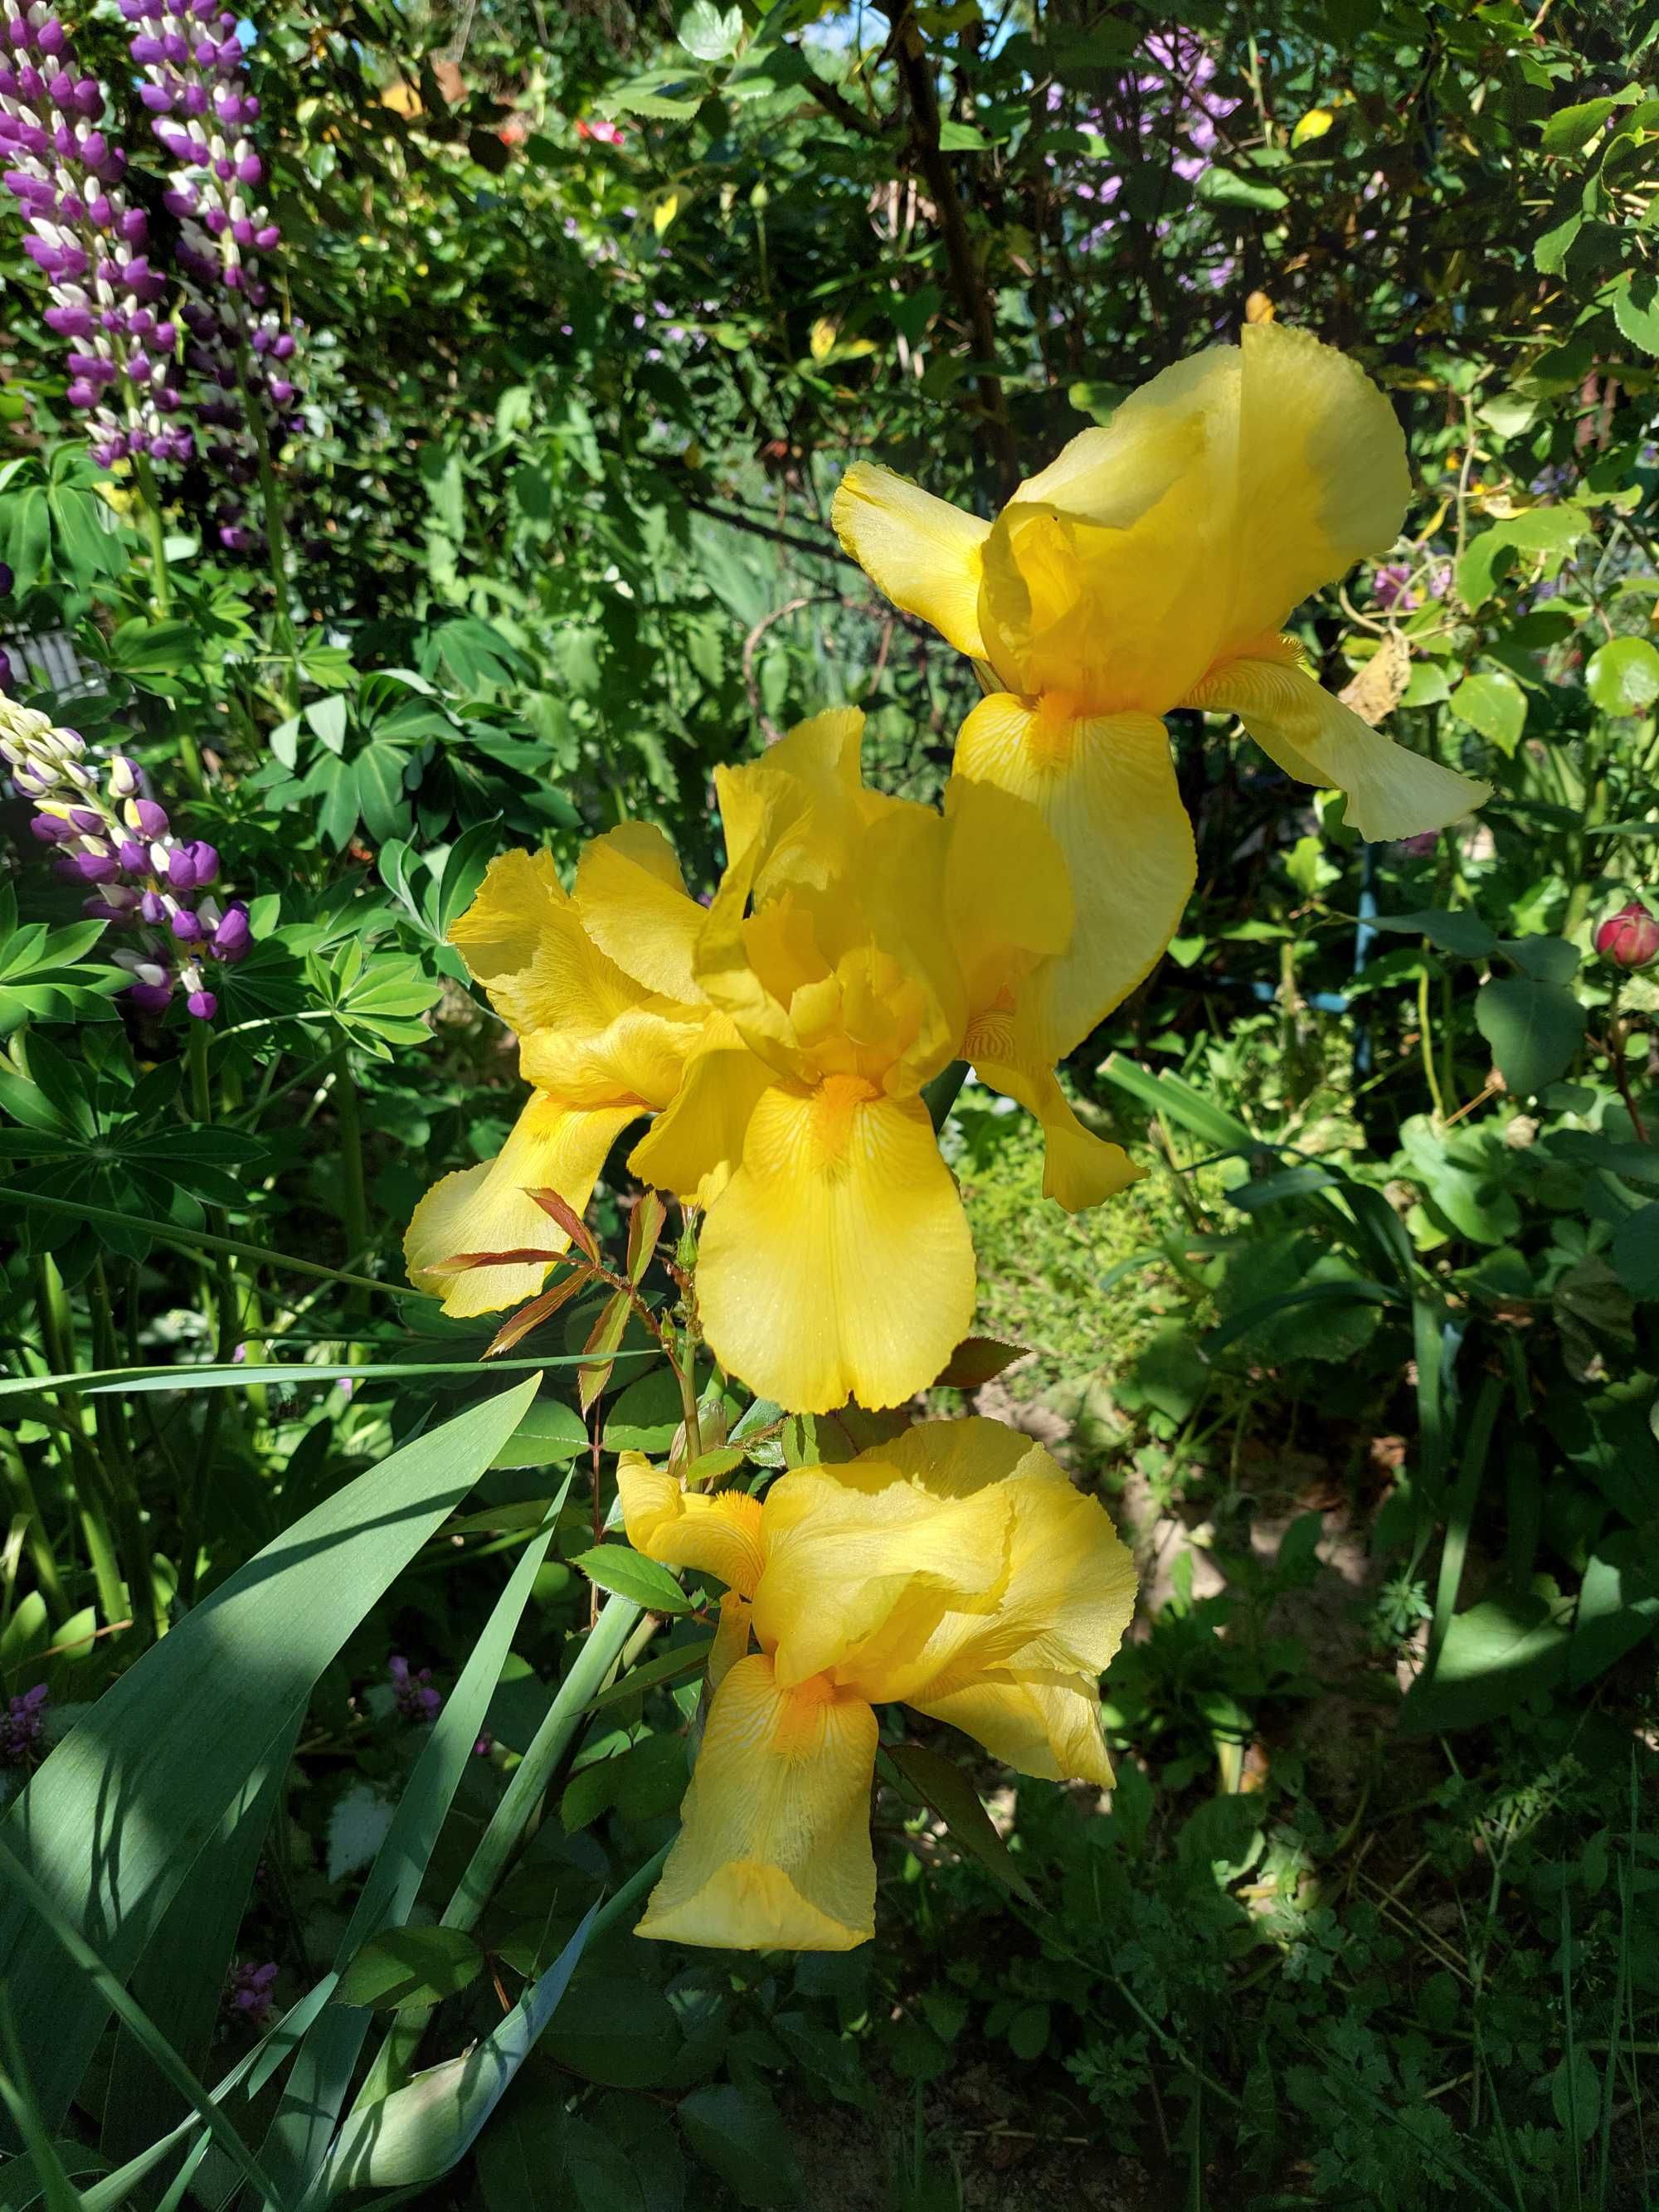 Iris culoare galben deosebit